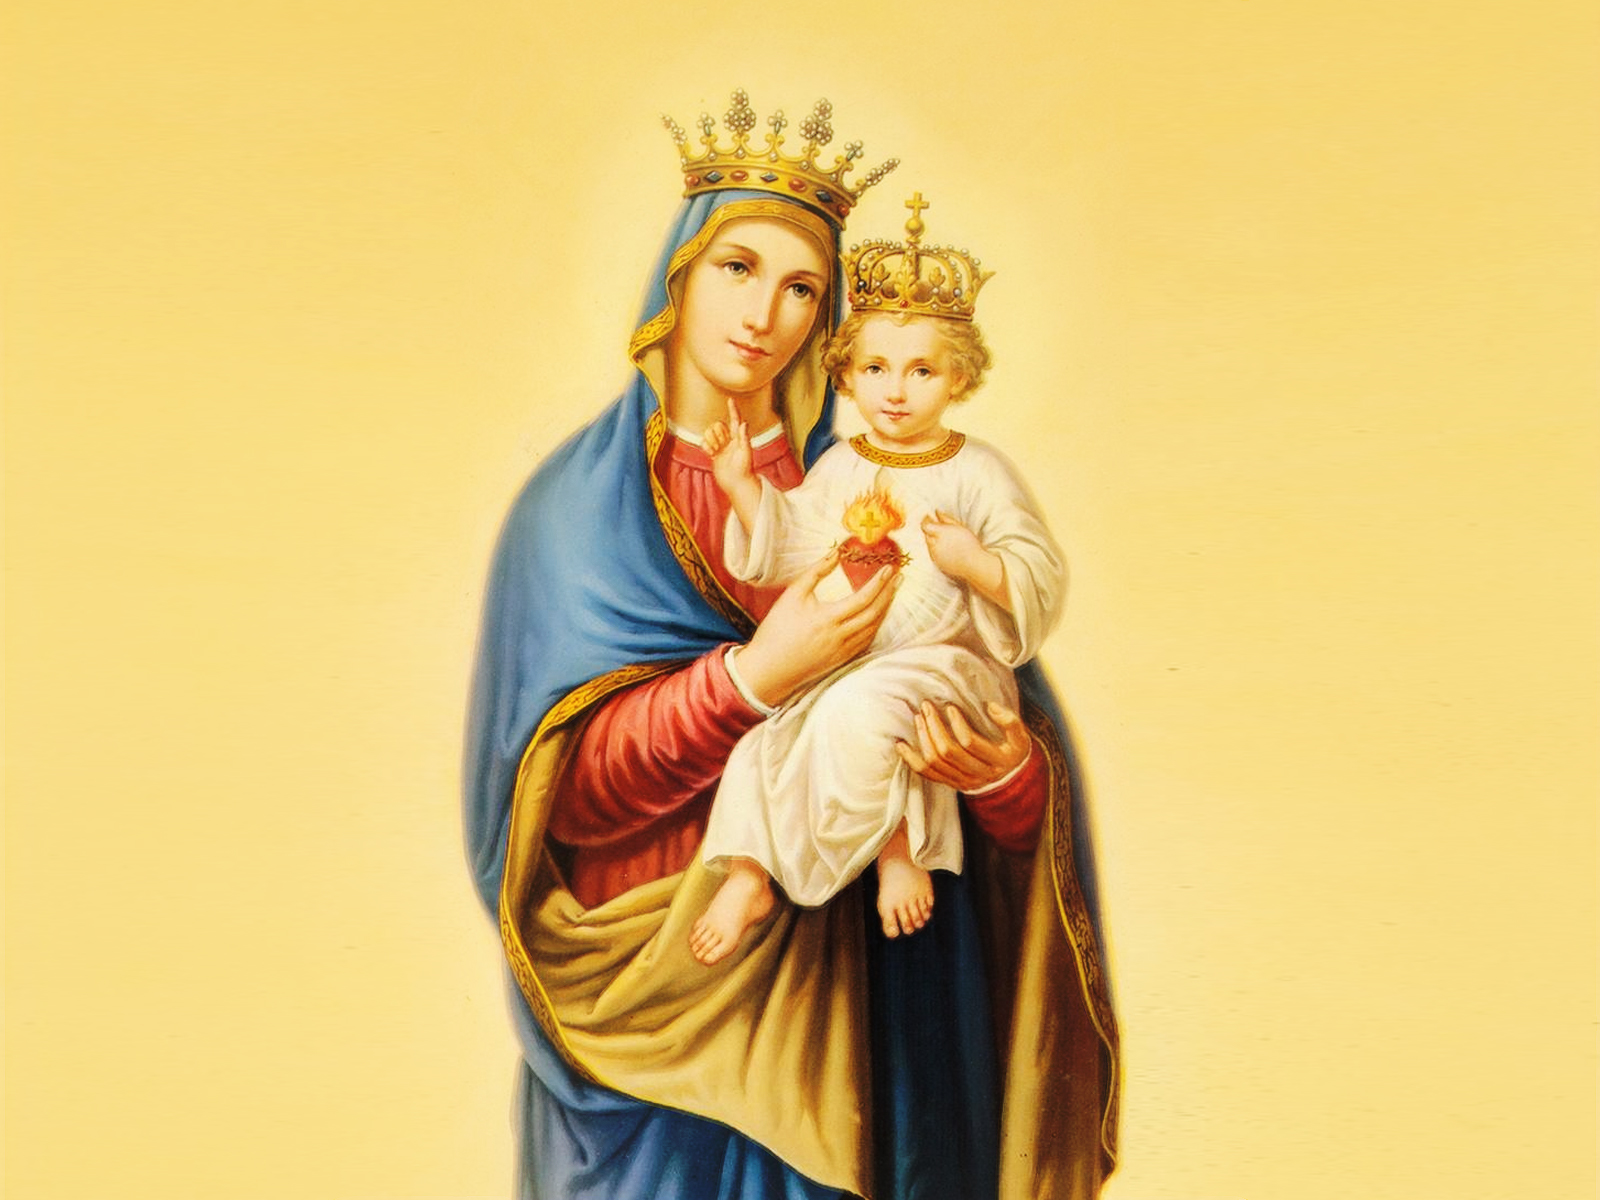 Maria nos ensina a conservar um coração fiel a Jesus Cristo